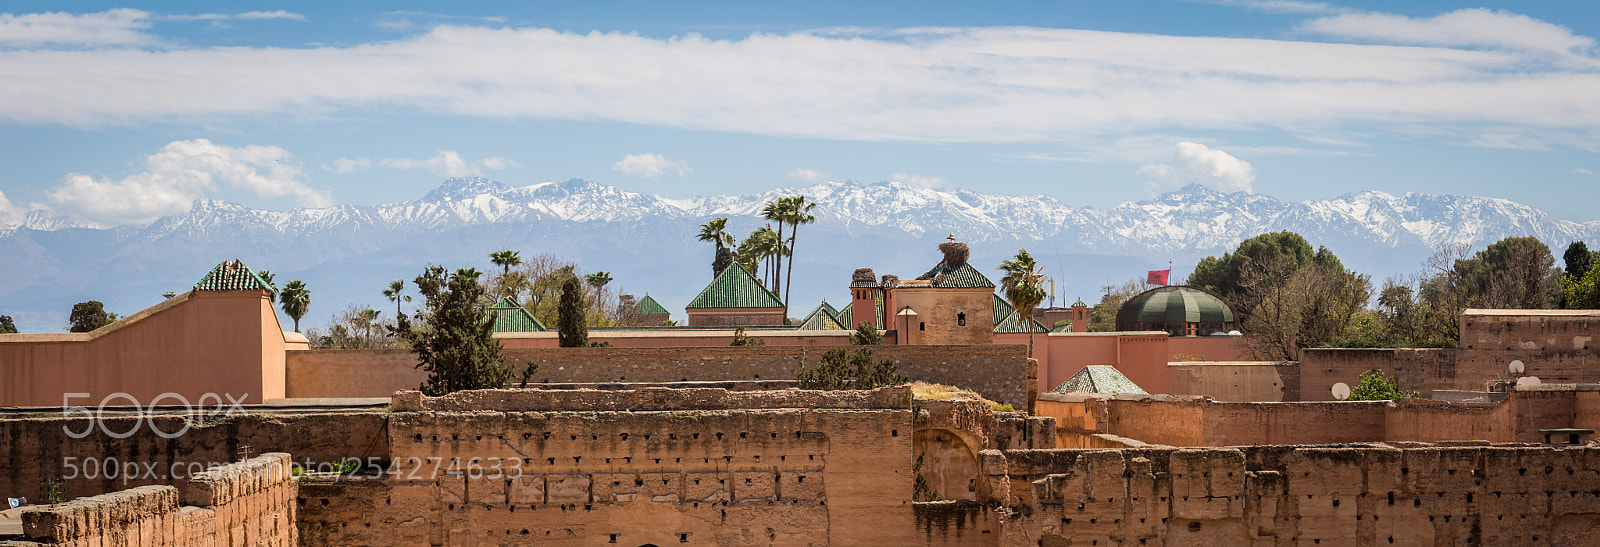 Canon EOS 700D (EOS Rebel T5i / EOS Kiss X7i) sample photo. Panorama sur l'atlas, marrakech photography